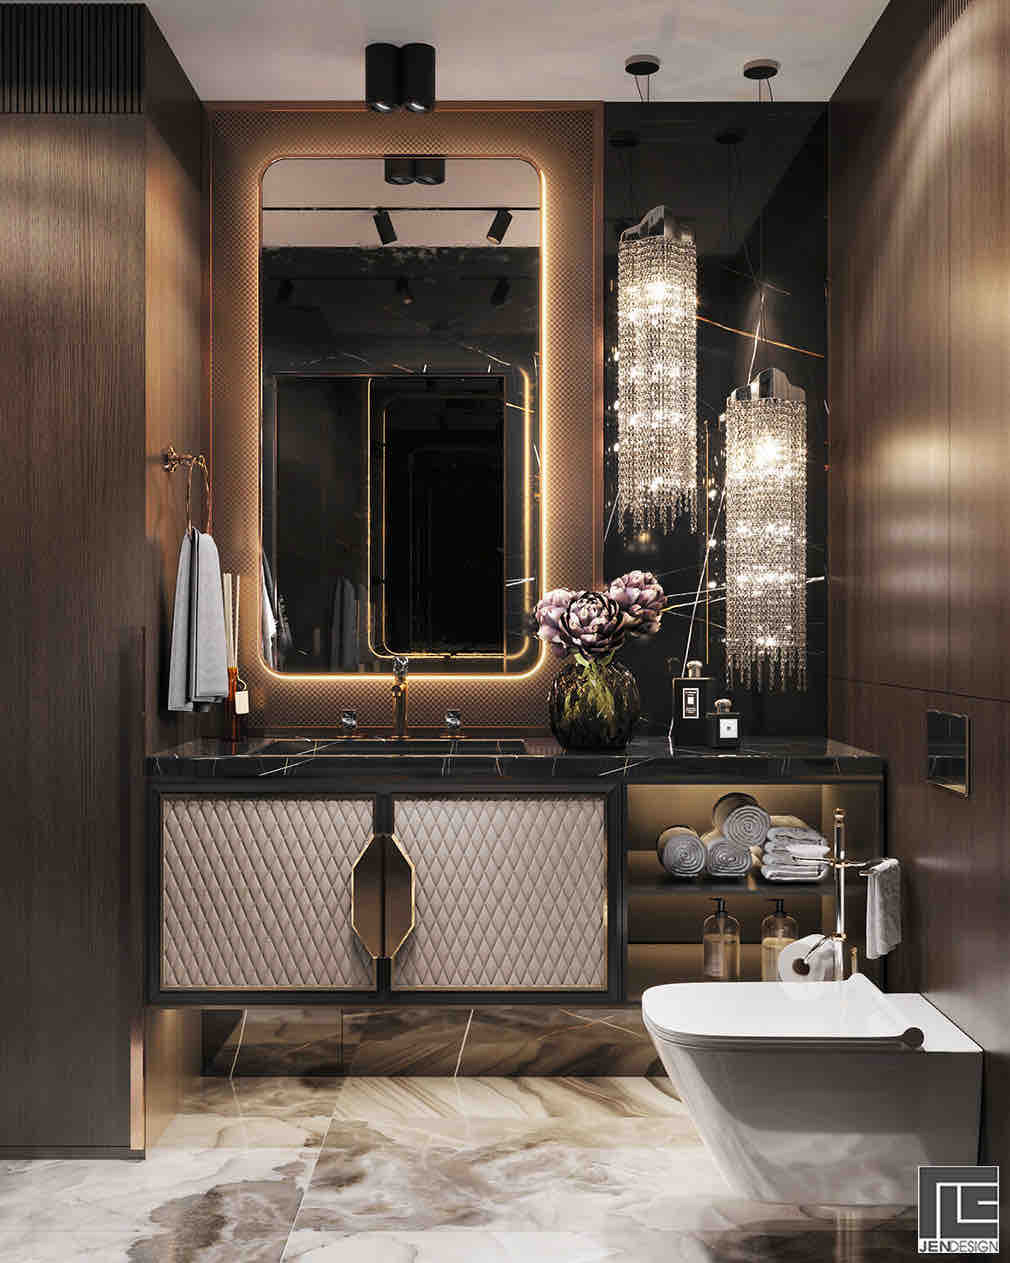 Đèn chùm thương hiệu van egmond lấp lánh trong phòng tắm dành cho khách